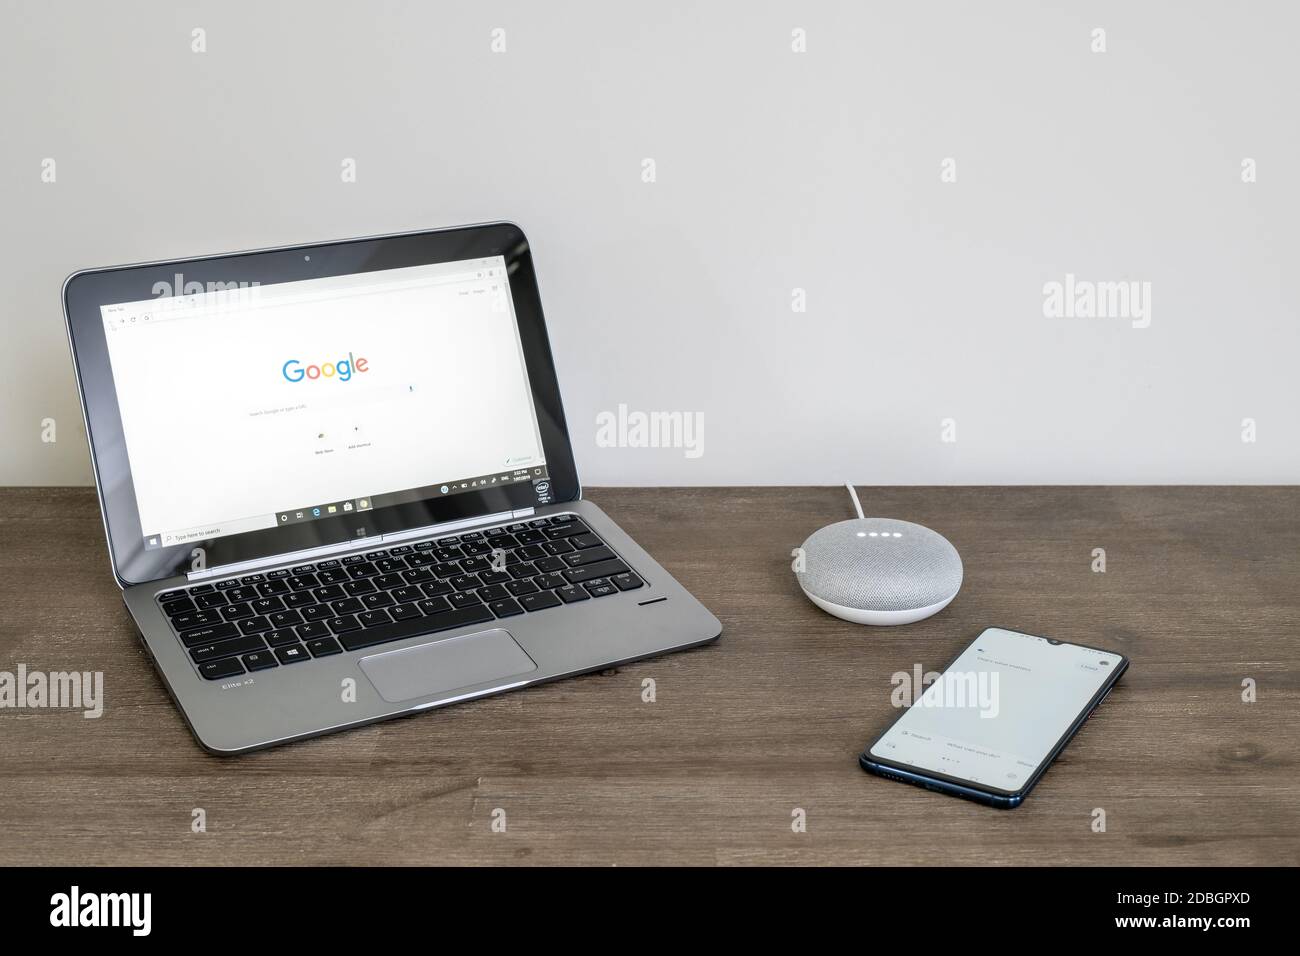 Adelaide, Australien - 7. Juli 2019: Google Home Mini mit HP-Laptop mit Windows 10 und Handy auf dem Tisch neben einander eingerichtet Stockfoto